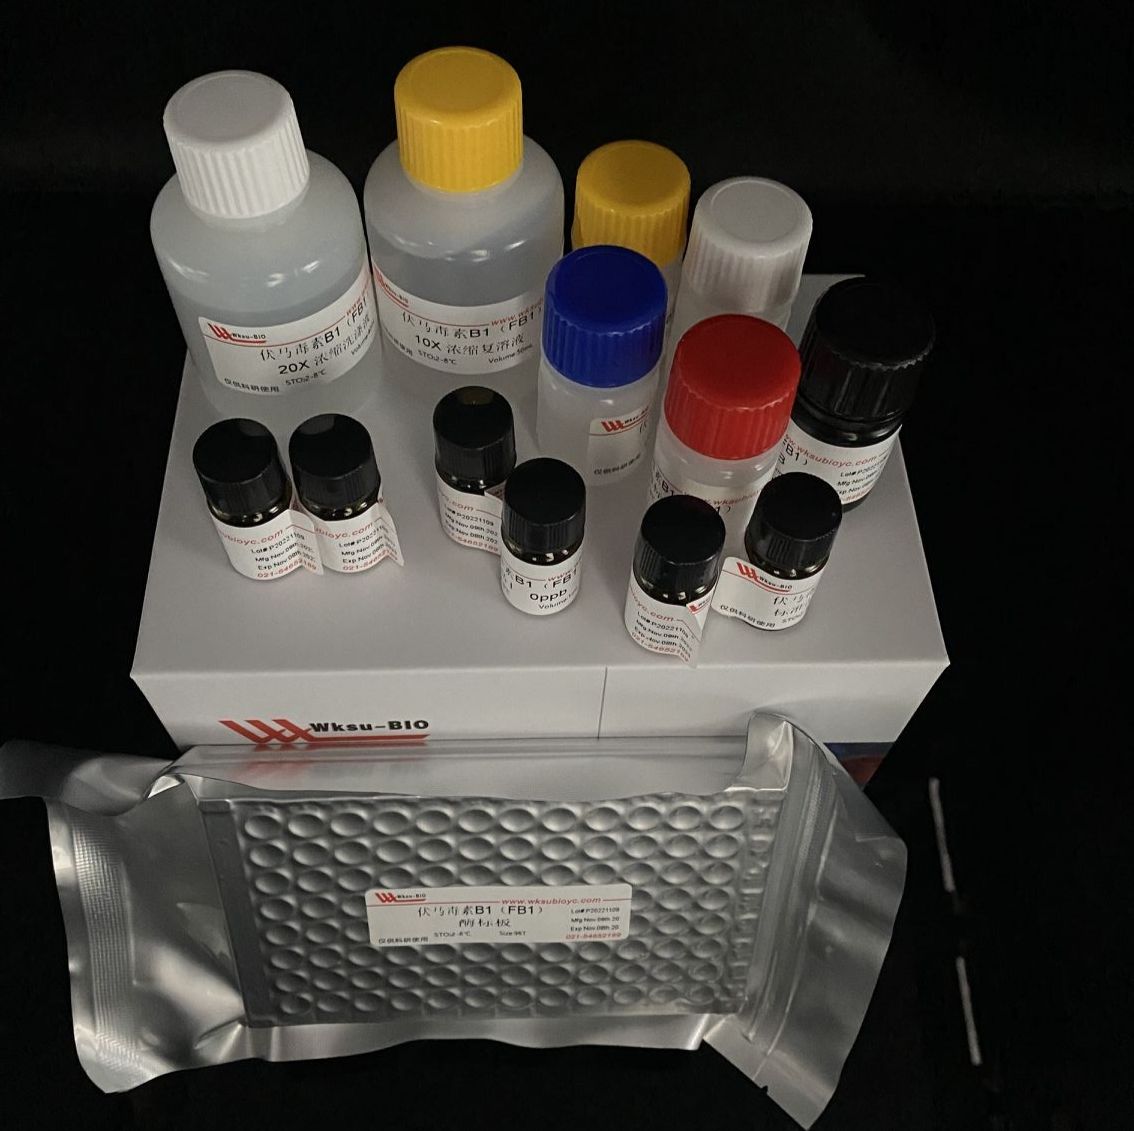 土壤芳基酰胺酶活性测定试剂盒,微板法